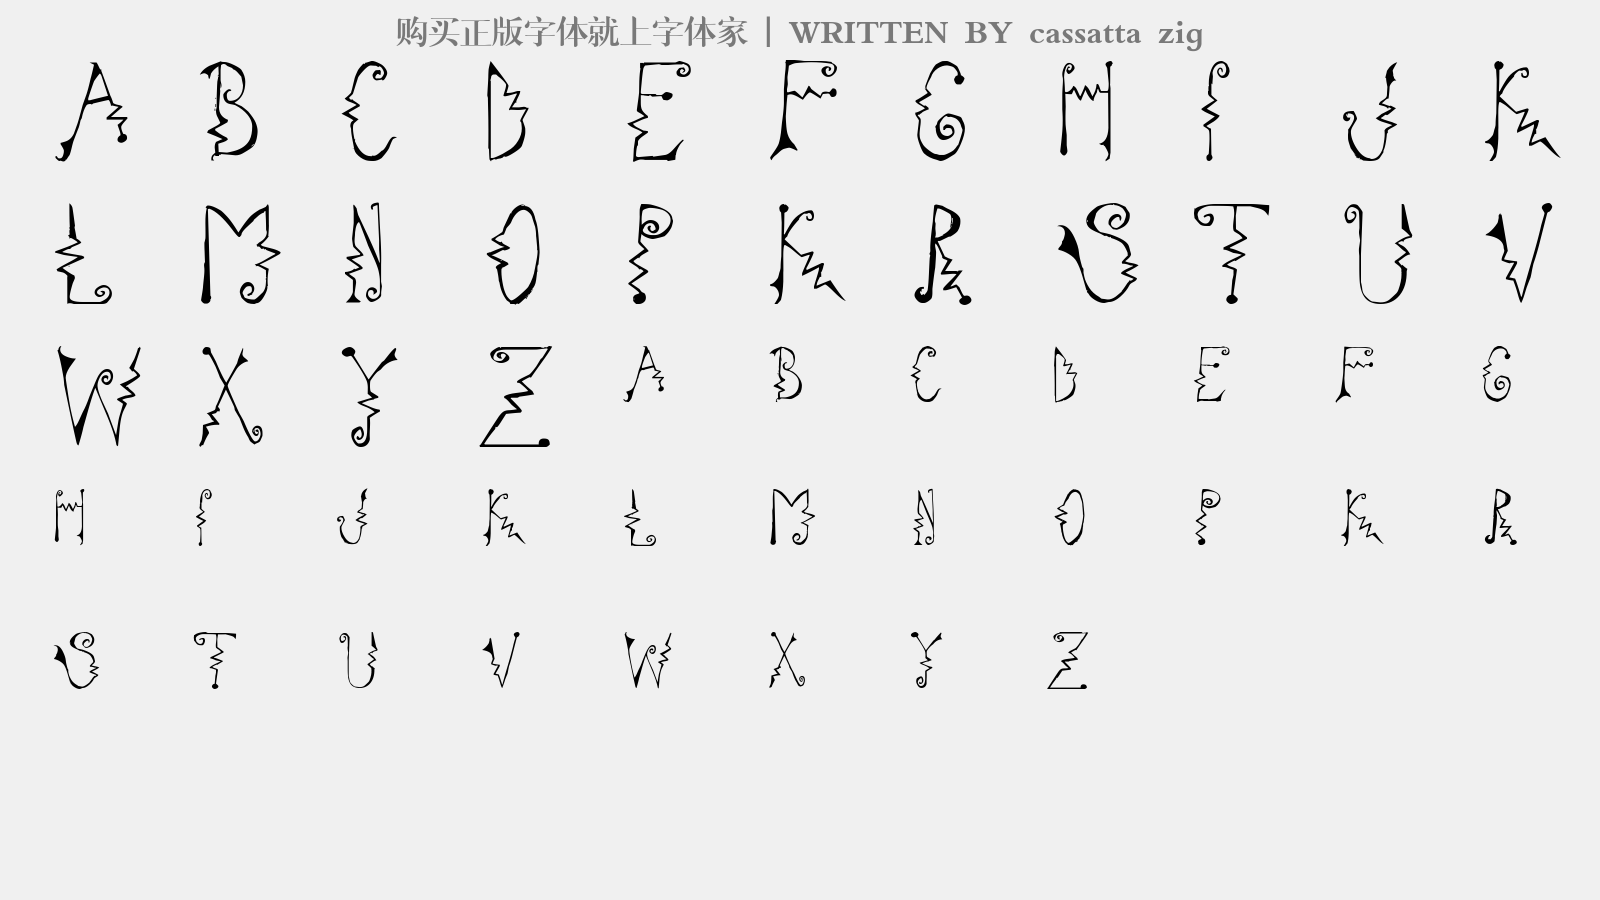 cassatta zig - 大写字母/小写字母/数字